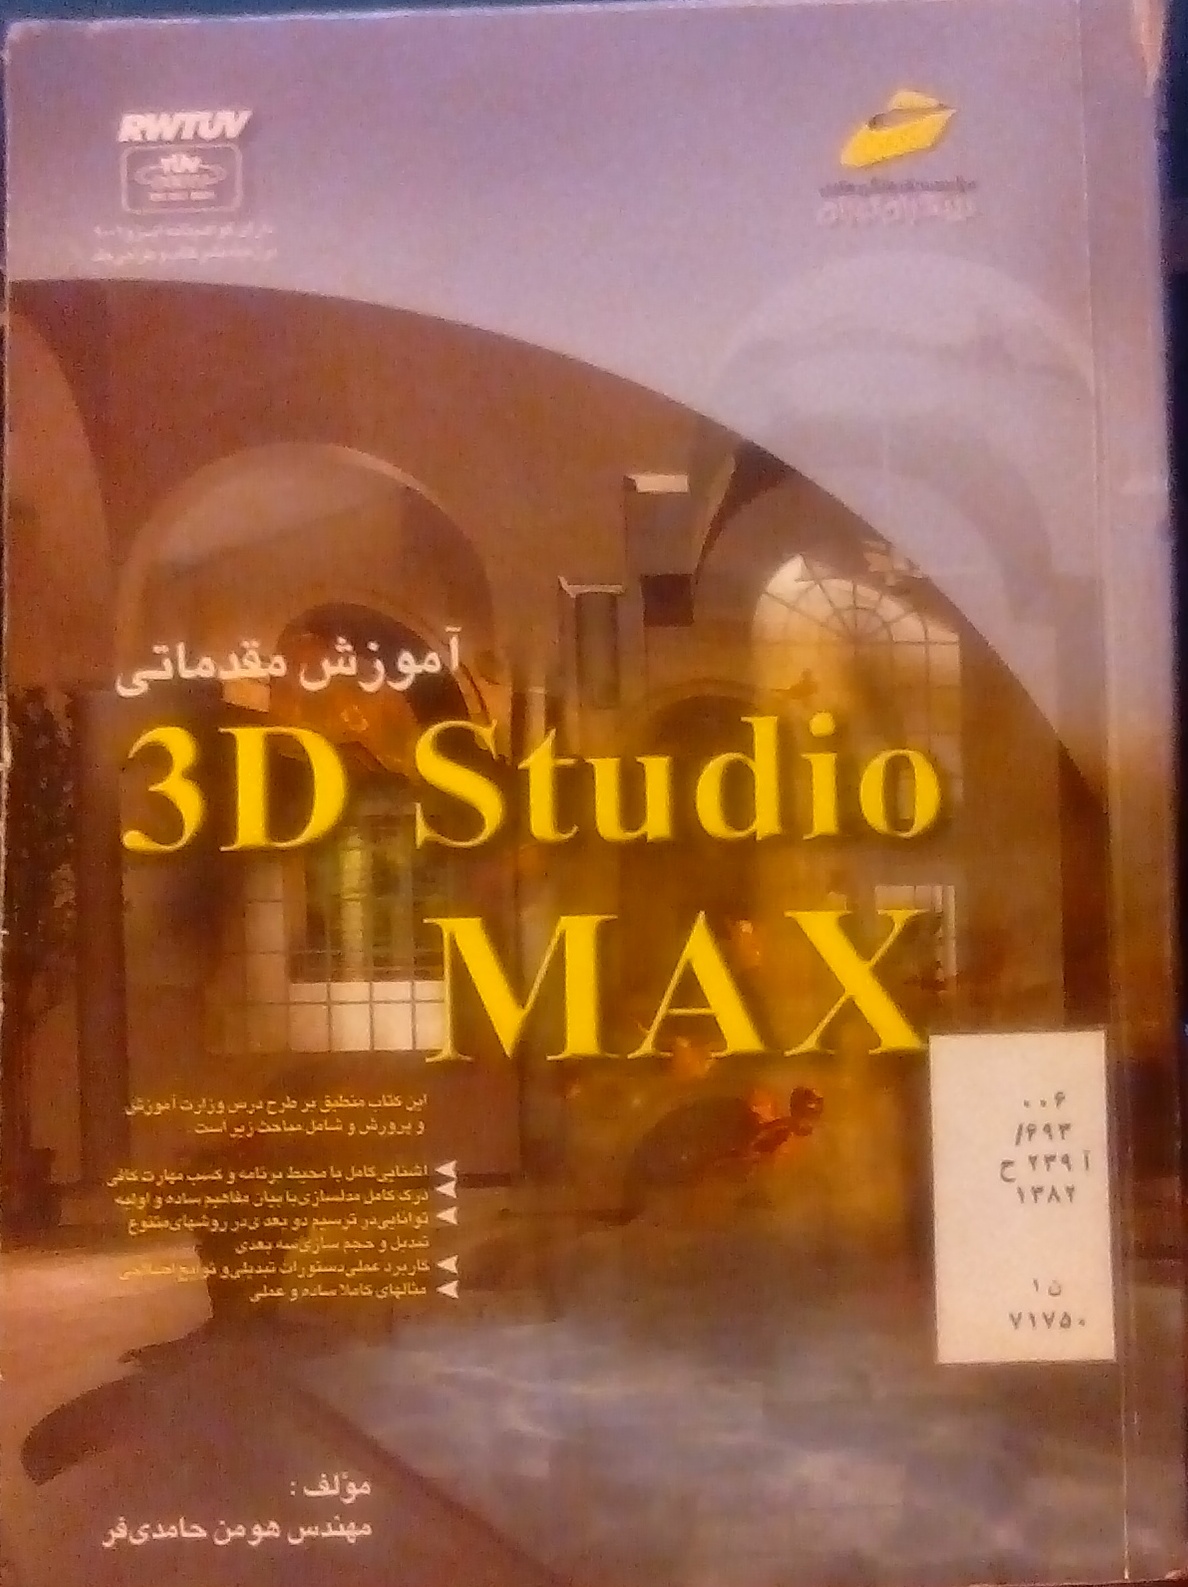  کتاب آموزش مقدماتی 3D Studio MAX